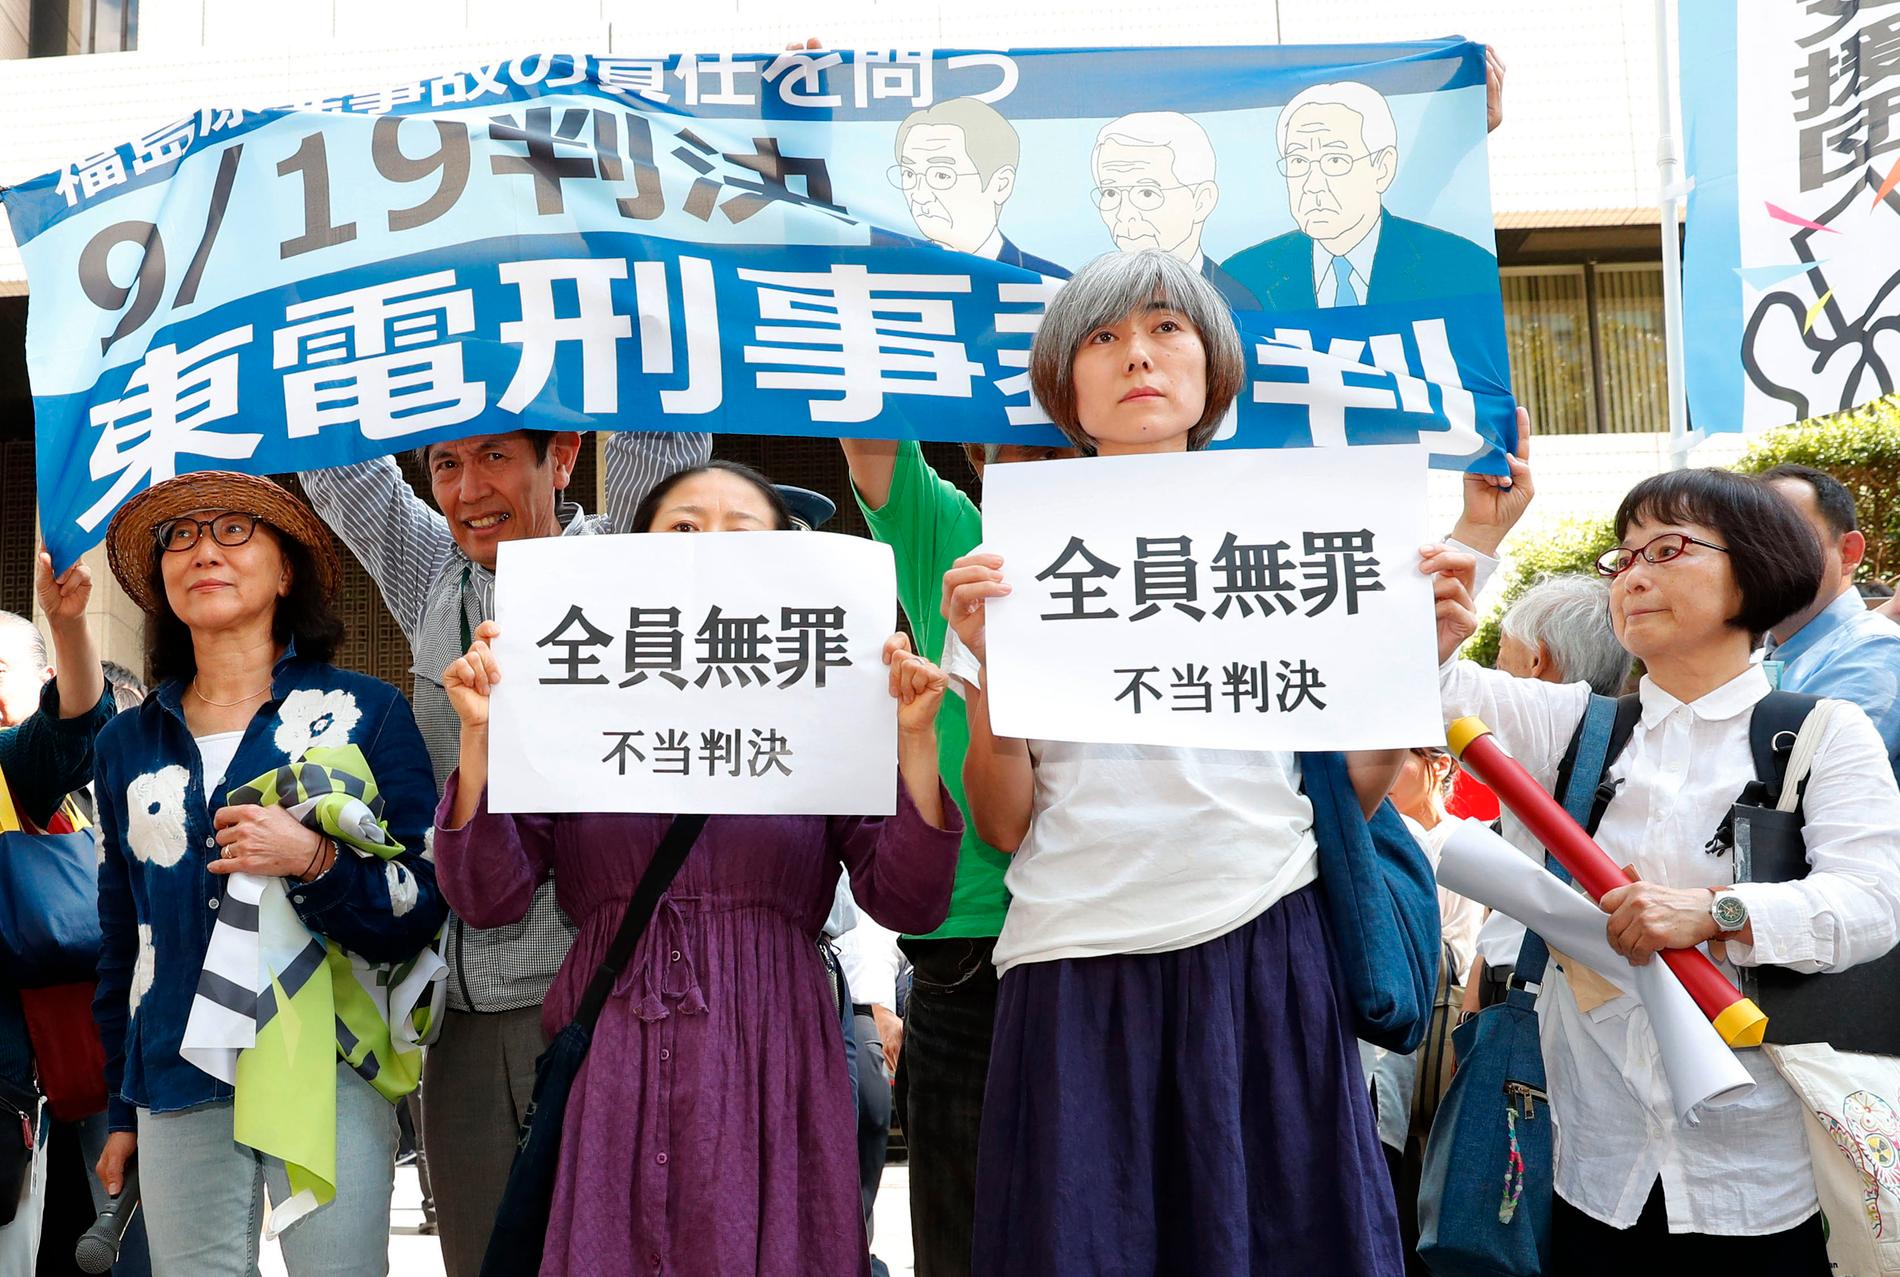 En grupp demonstranter utanför domstolen i Tokyo protesterar mot vad de beskriver som en "orättvis dom".